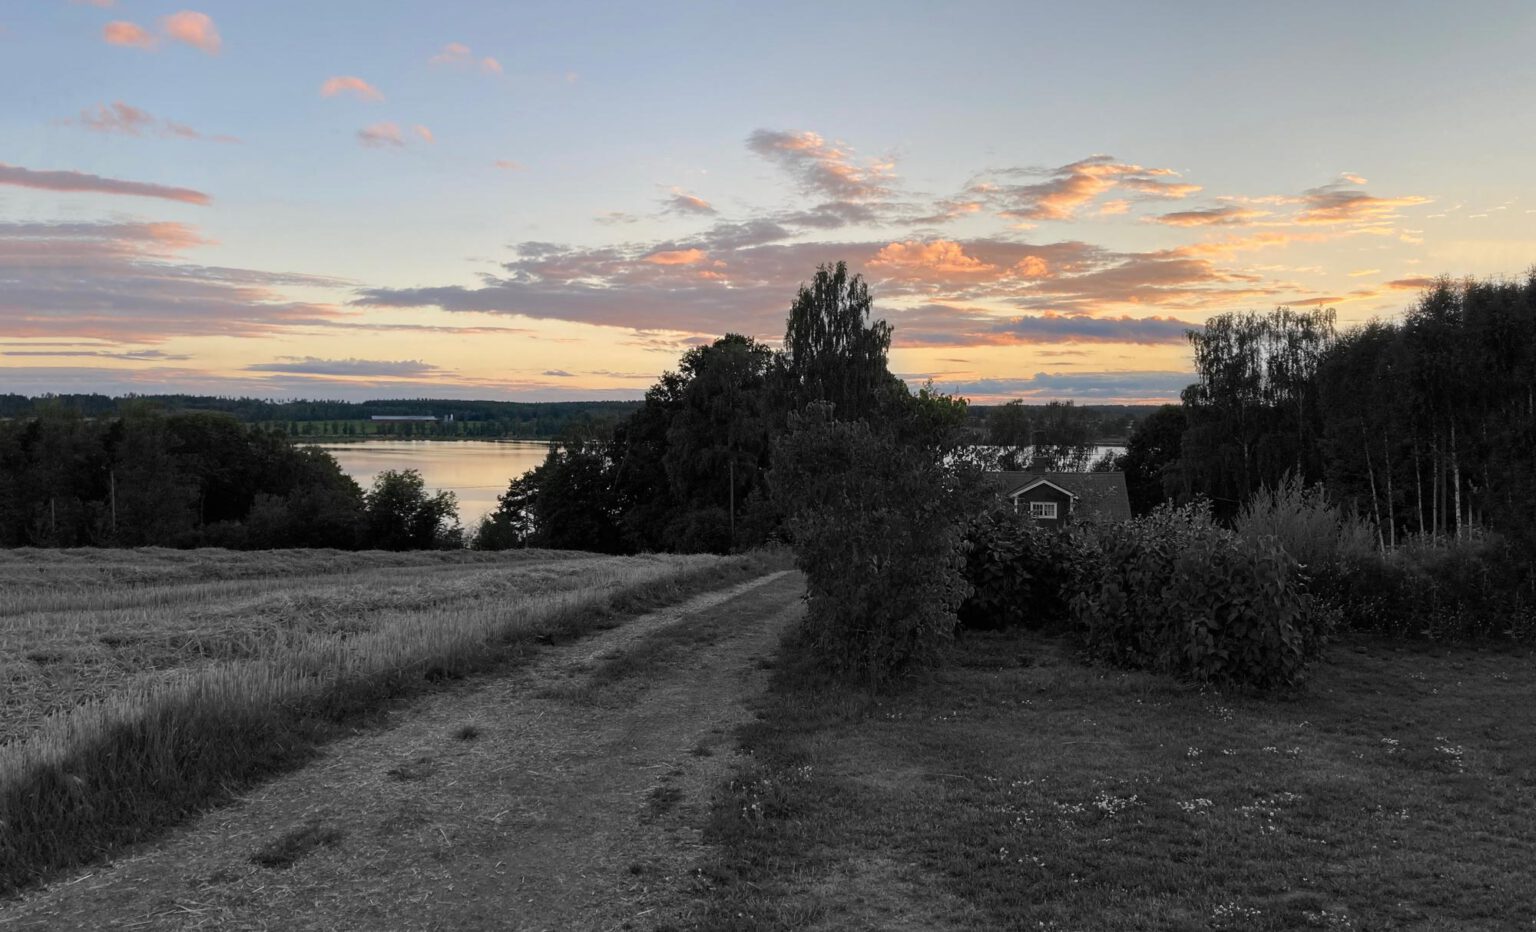 Sonnenuntergang in Schweden. Kleines Haus am See, von Wiesen und Bäumen umgeben.